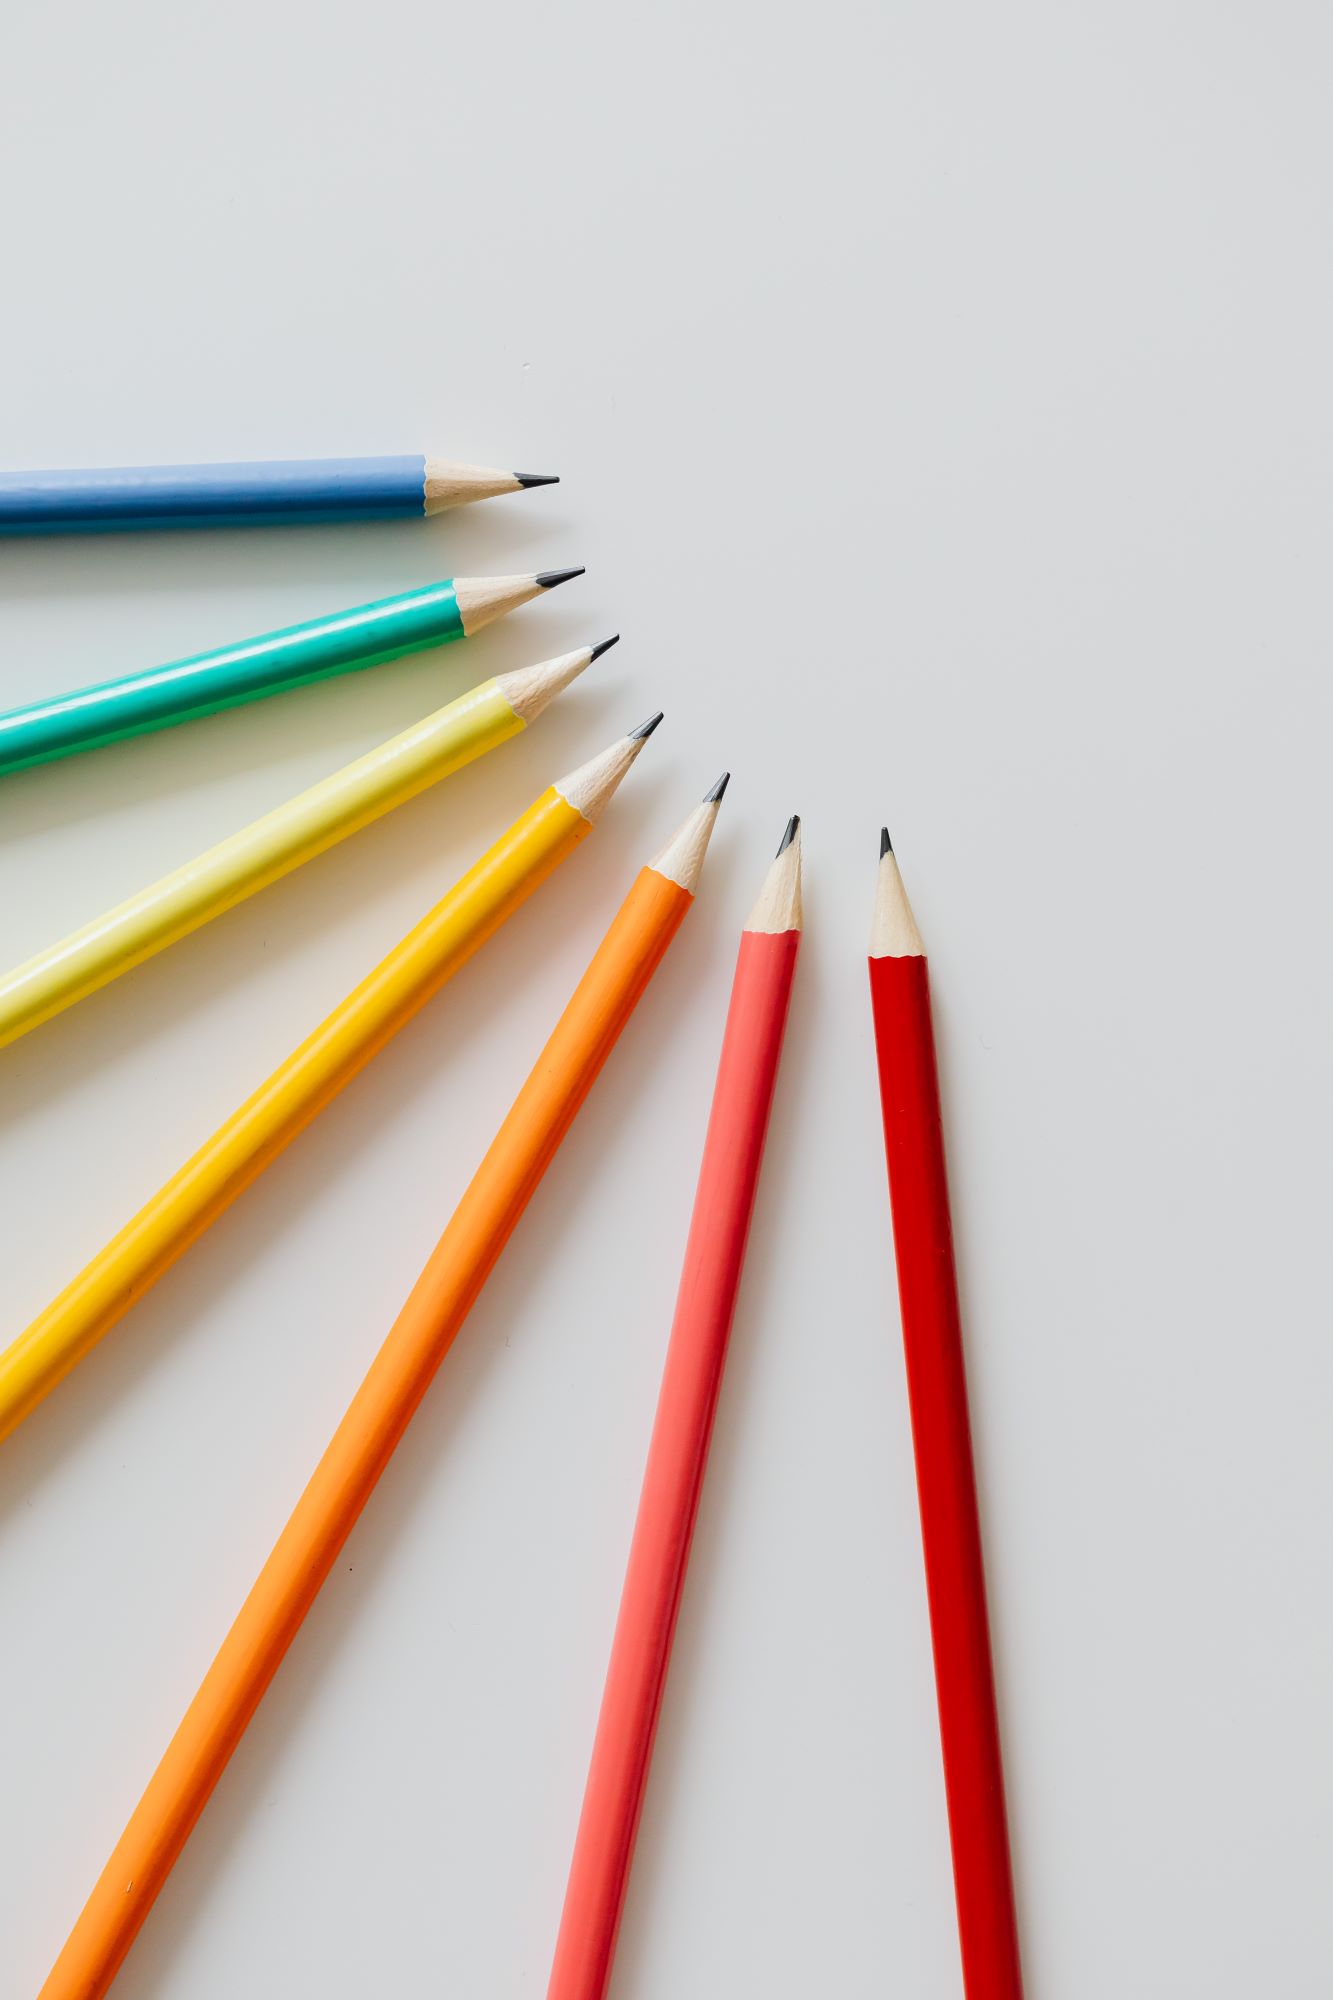 Vor einem weißen Hintergrund liegen Bleistifte in Regenbogenfarben